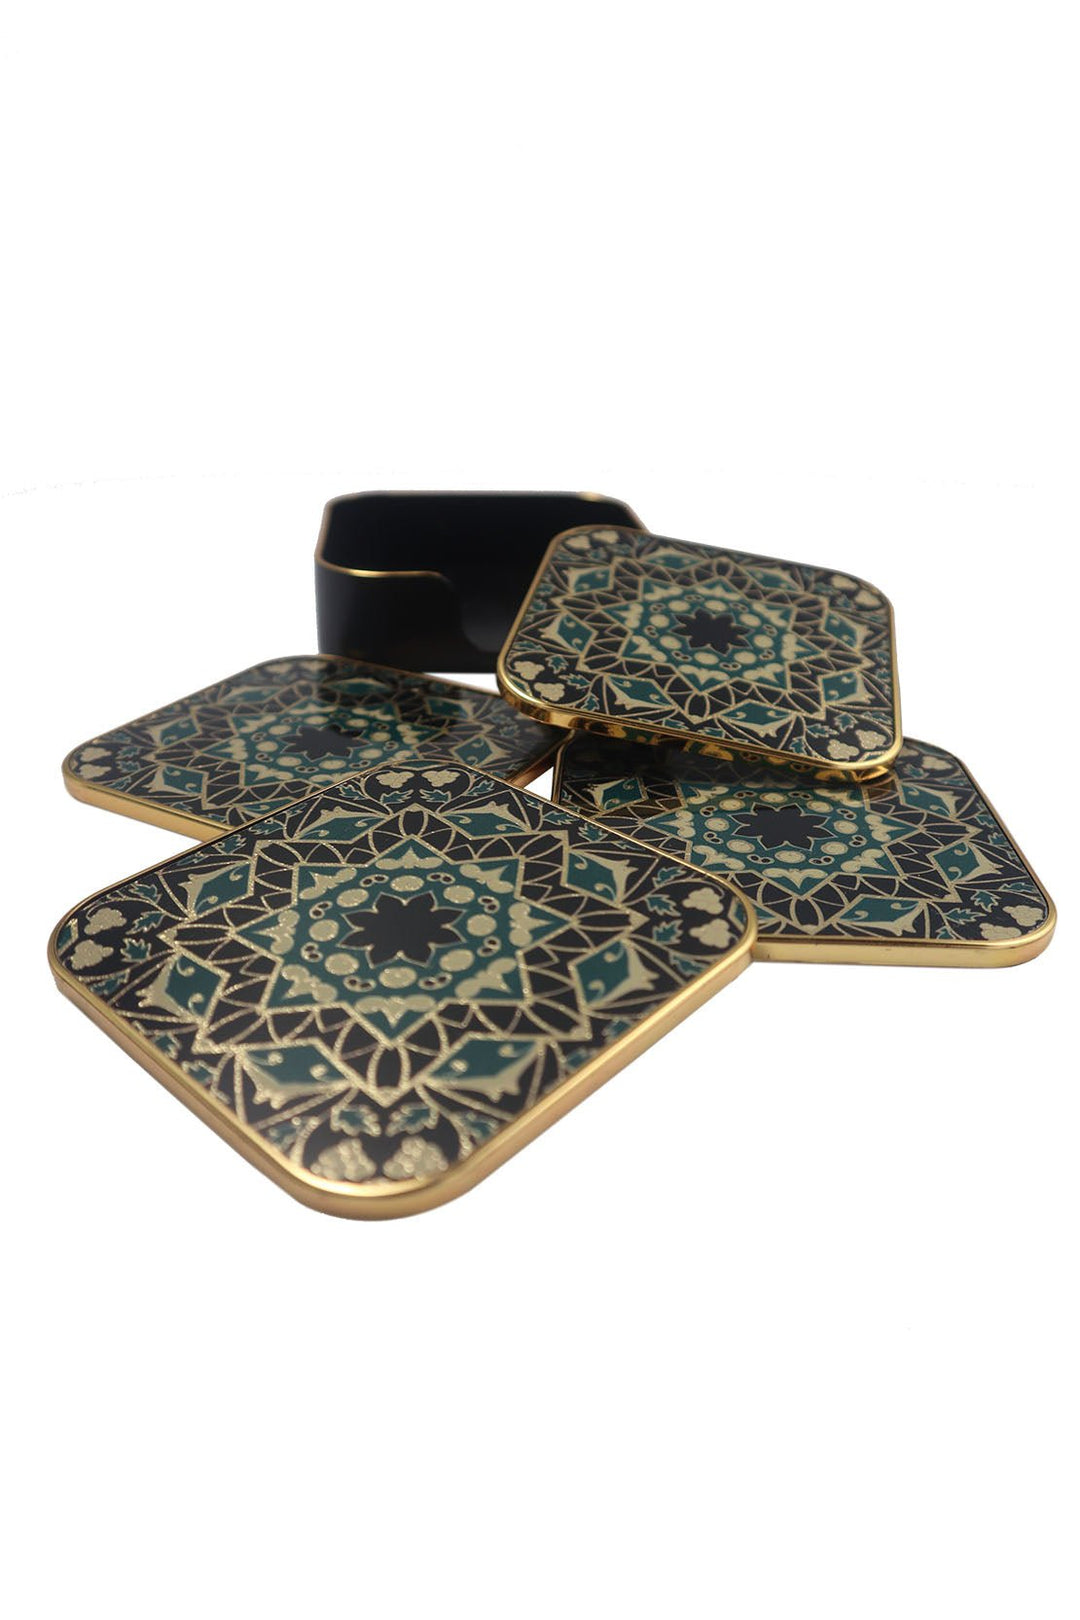 Italian Tea Coaster Set Square Traditional Design - V Surfaces